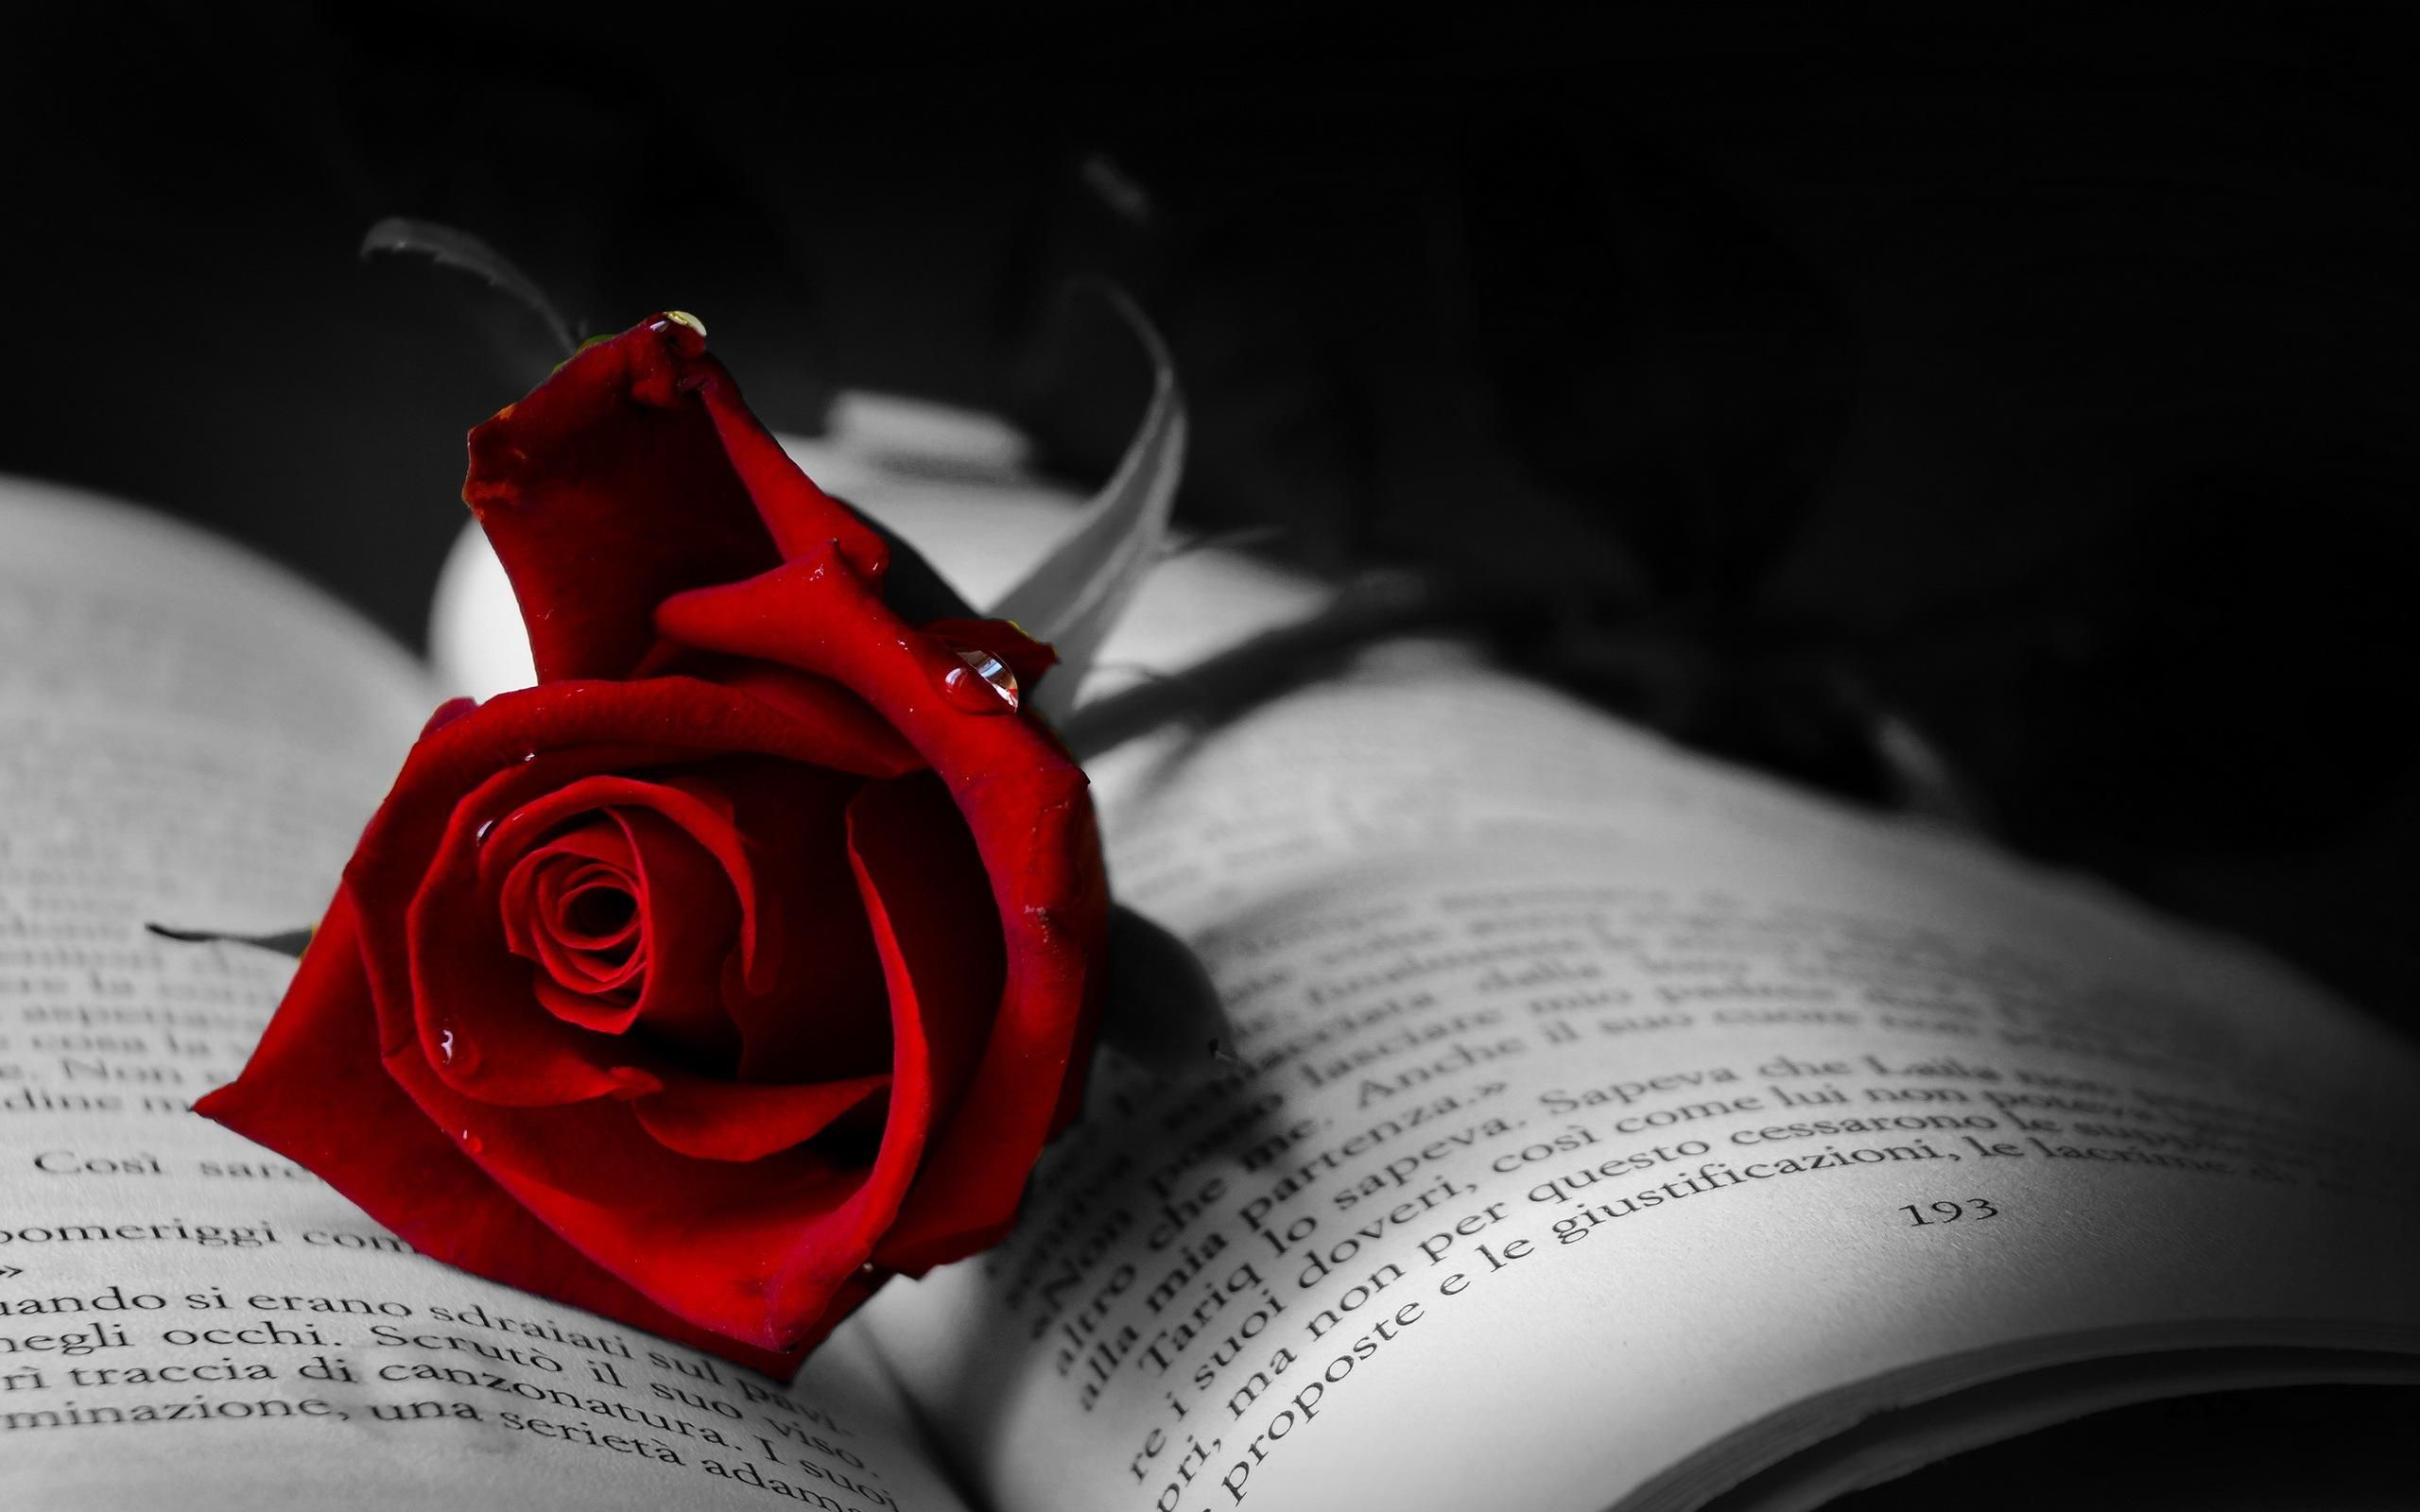 HD Book With Red Rose Wallpaper. Dark red roses, Rose wallpaper